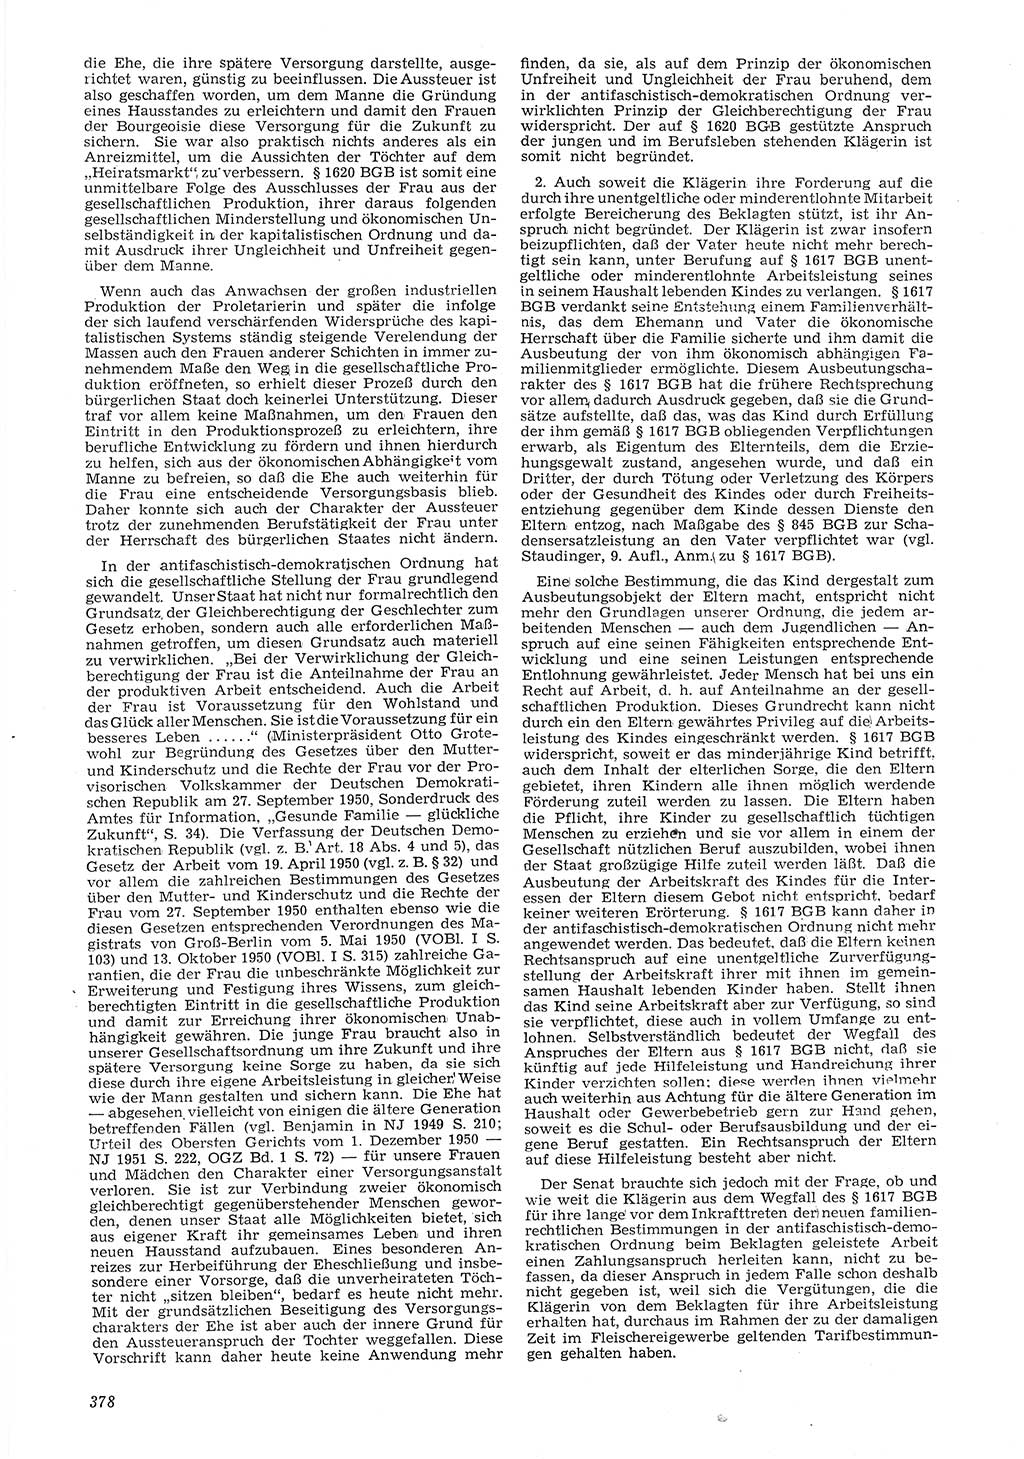 Neue Justiz (NJ), Zeitschrift für Recht und Rechtswissenschaft [Deutsche Demokratische Republik (DDR)], 6. Jahrgang 1952, Seite 378 (NJ DDR 1952, S. 378)